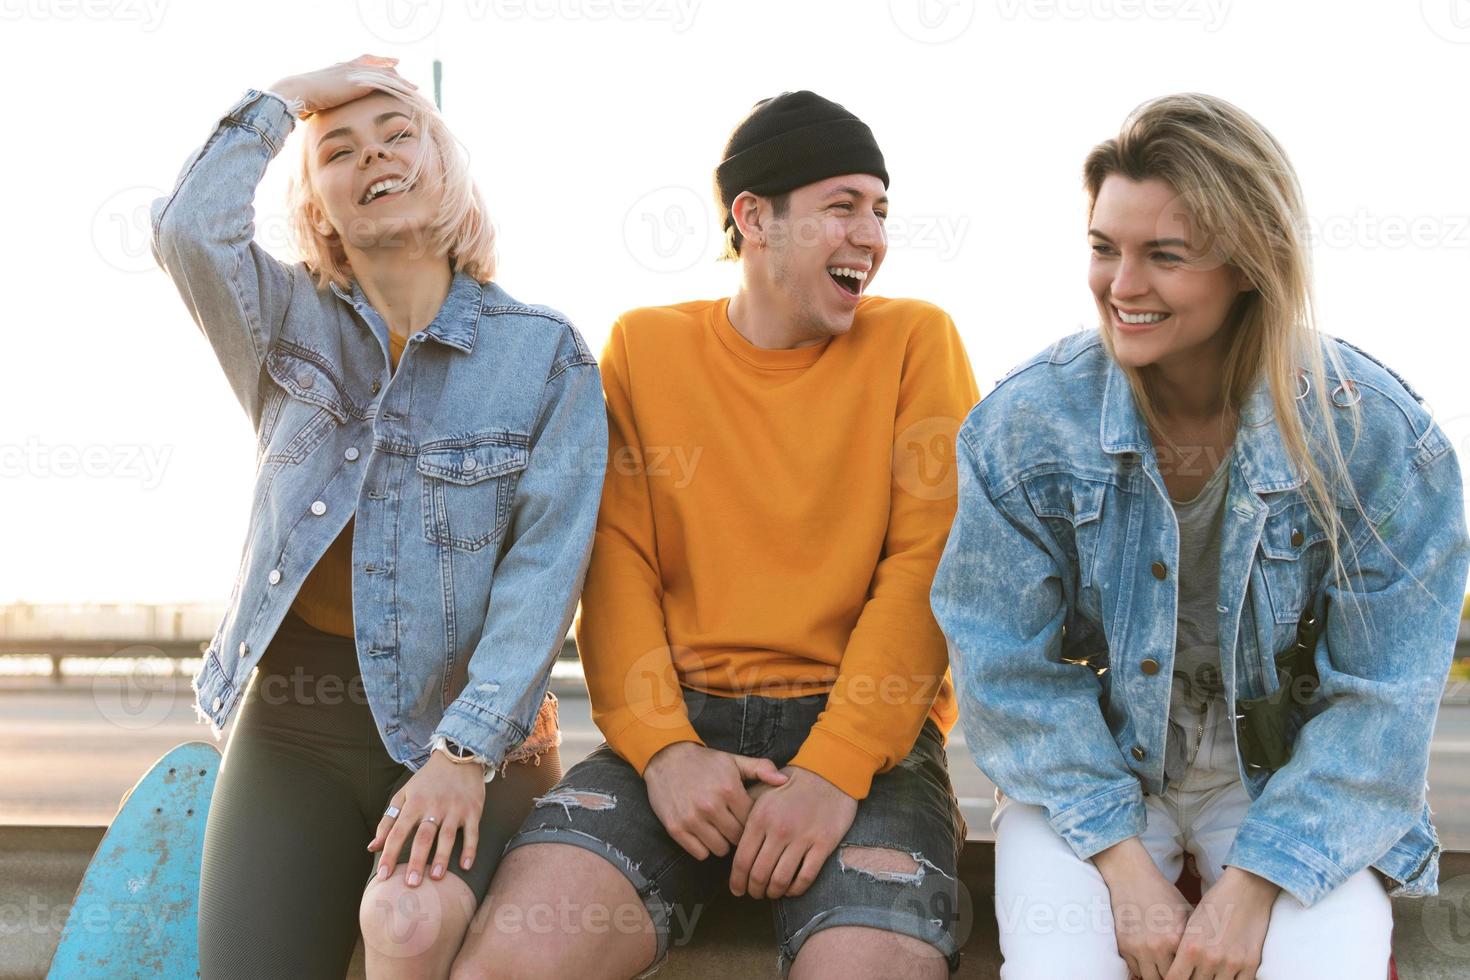 trois amis positifs rient dans une rue photo